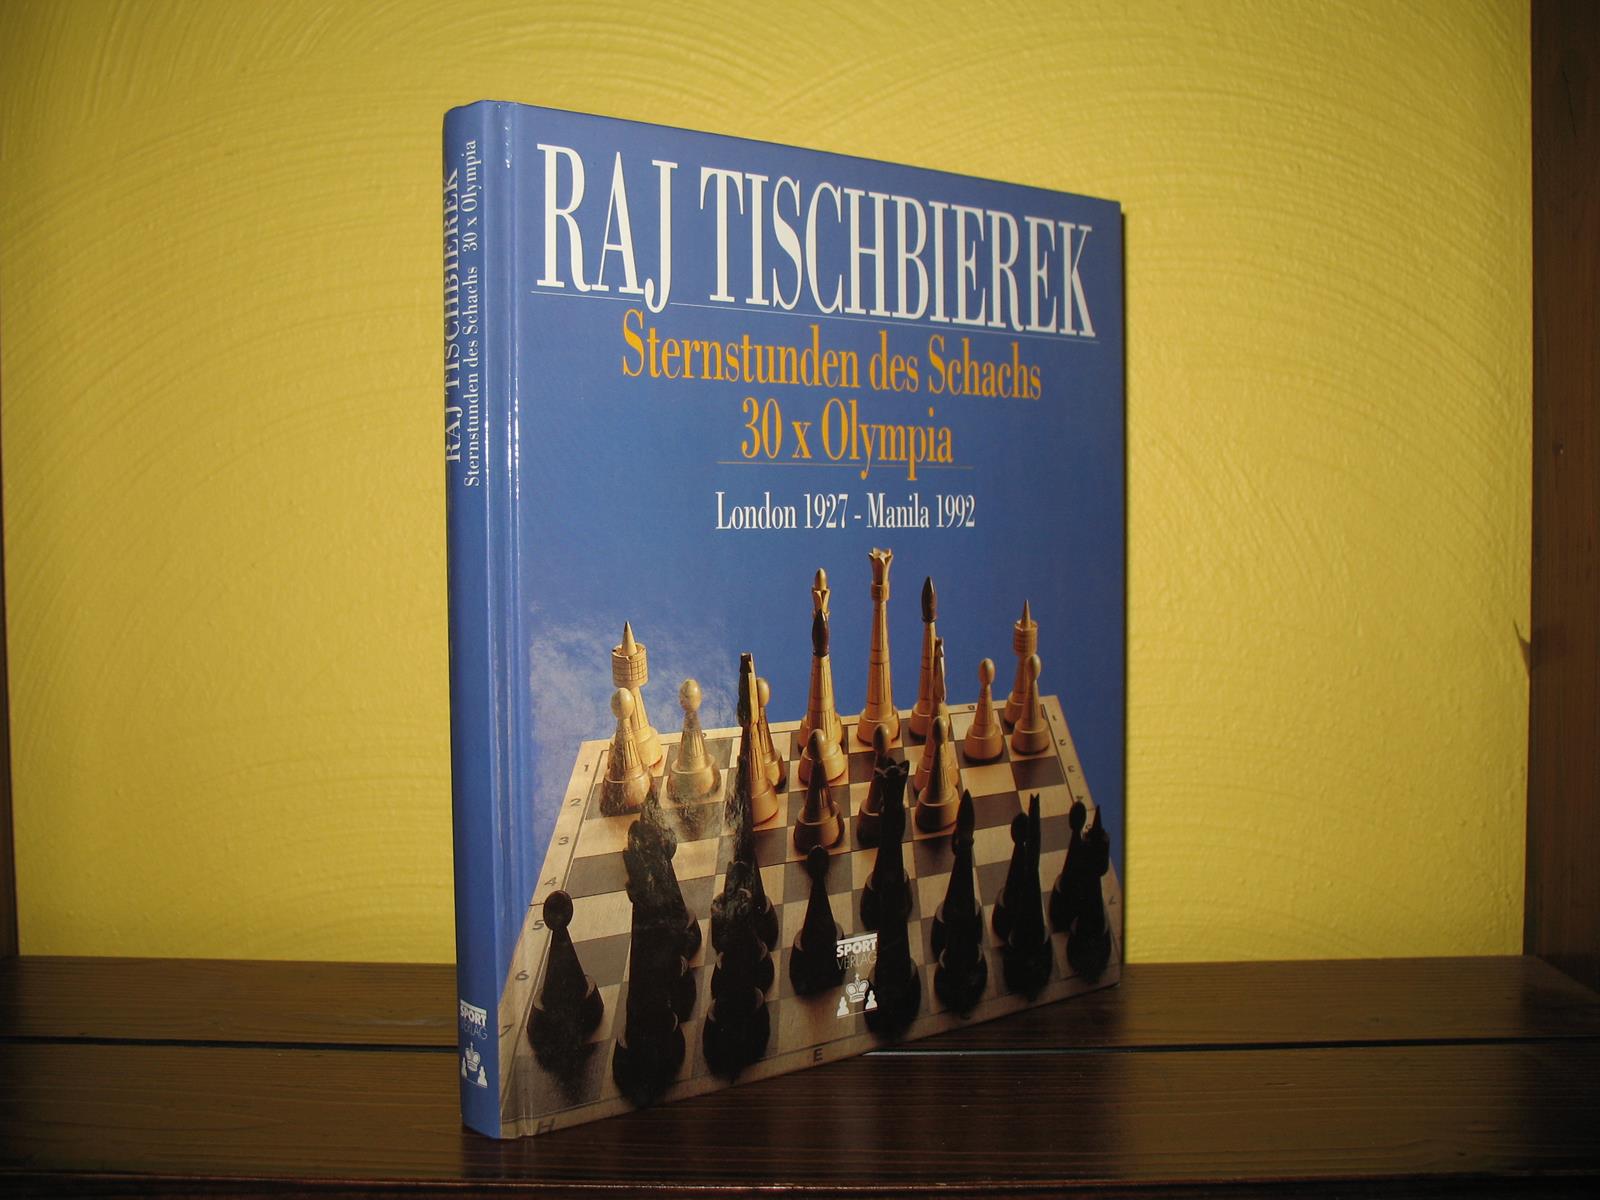 Sternstunden des Schachs: 30 x Olympia. London 1927 - Manila 1992. - Tischbierek, Raj